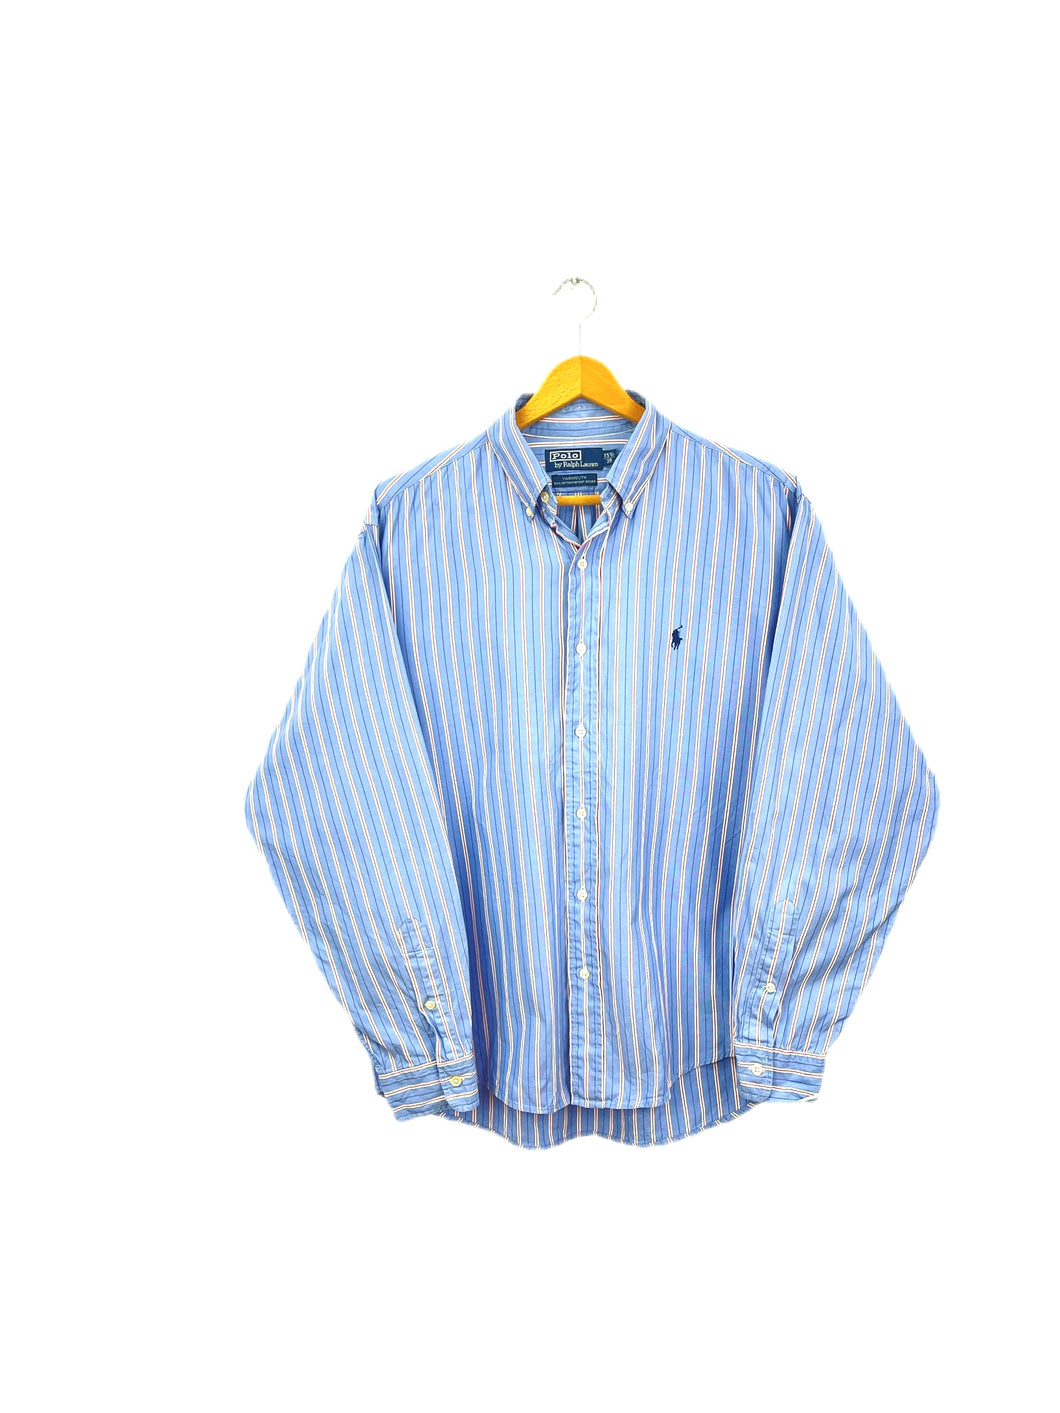 Ralph Lauren Shirt - Large